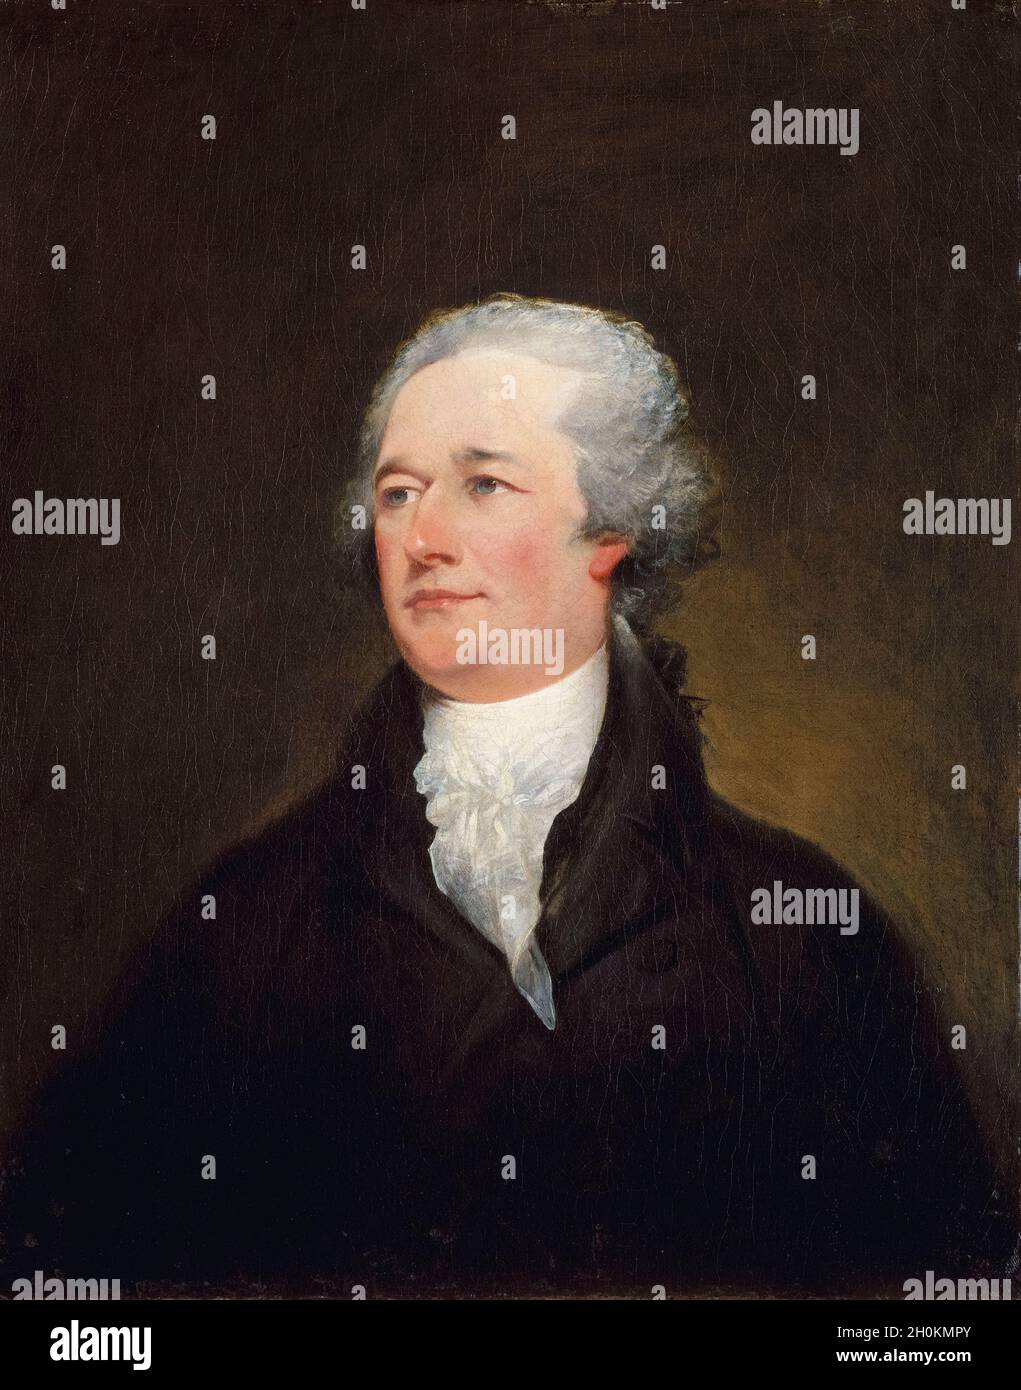 Alexander Hamilton (1755 ou 1757-1804), homme d'État américain, homme politique et commandant militaire, portrait peint par John Trumbull, 1804-1806 Banque D'Images